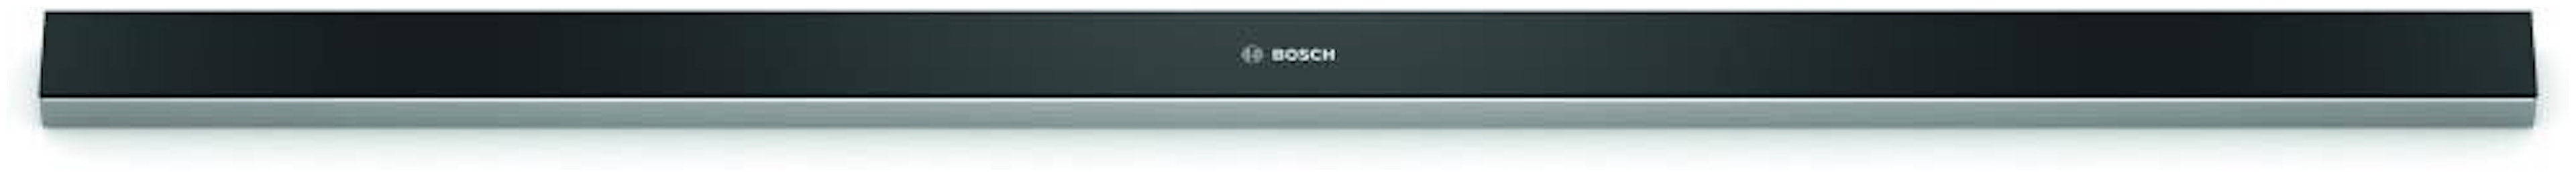 Bosch DSZ4986